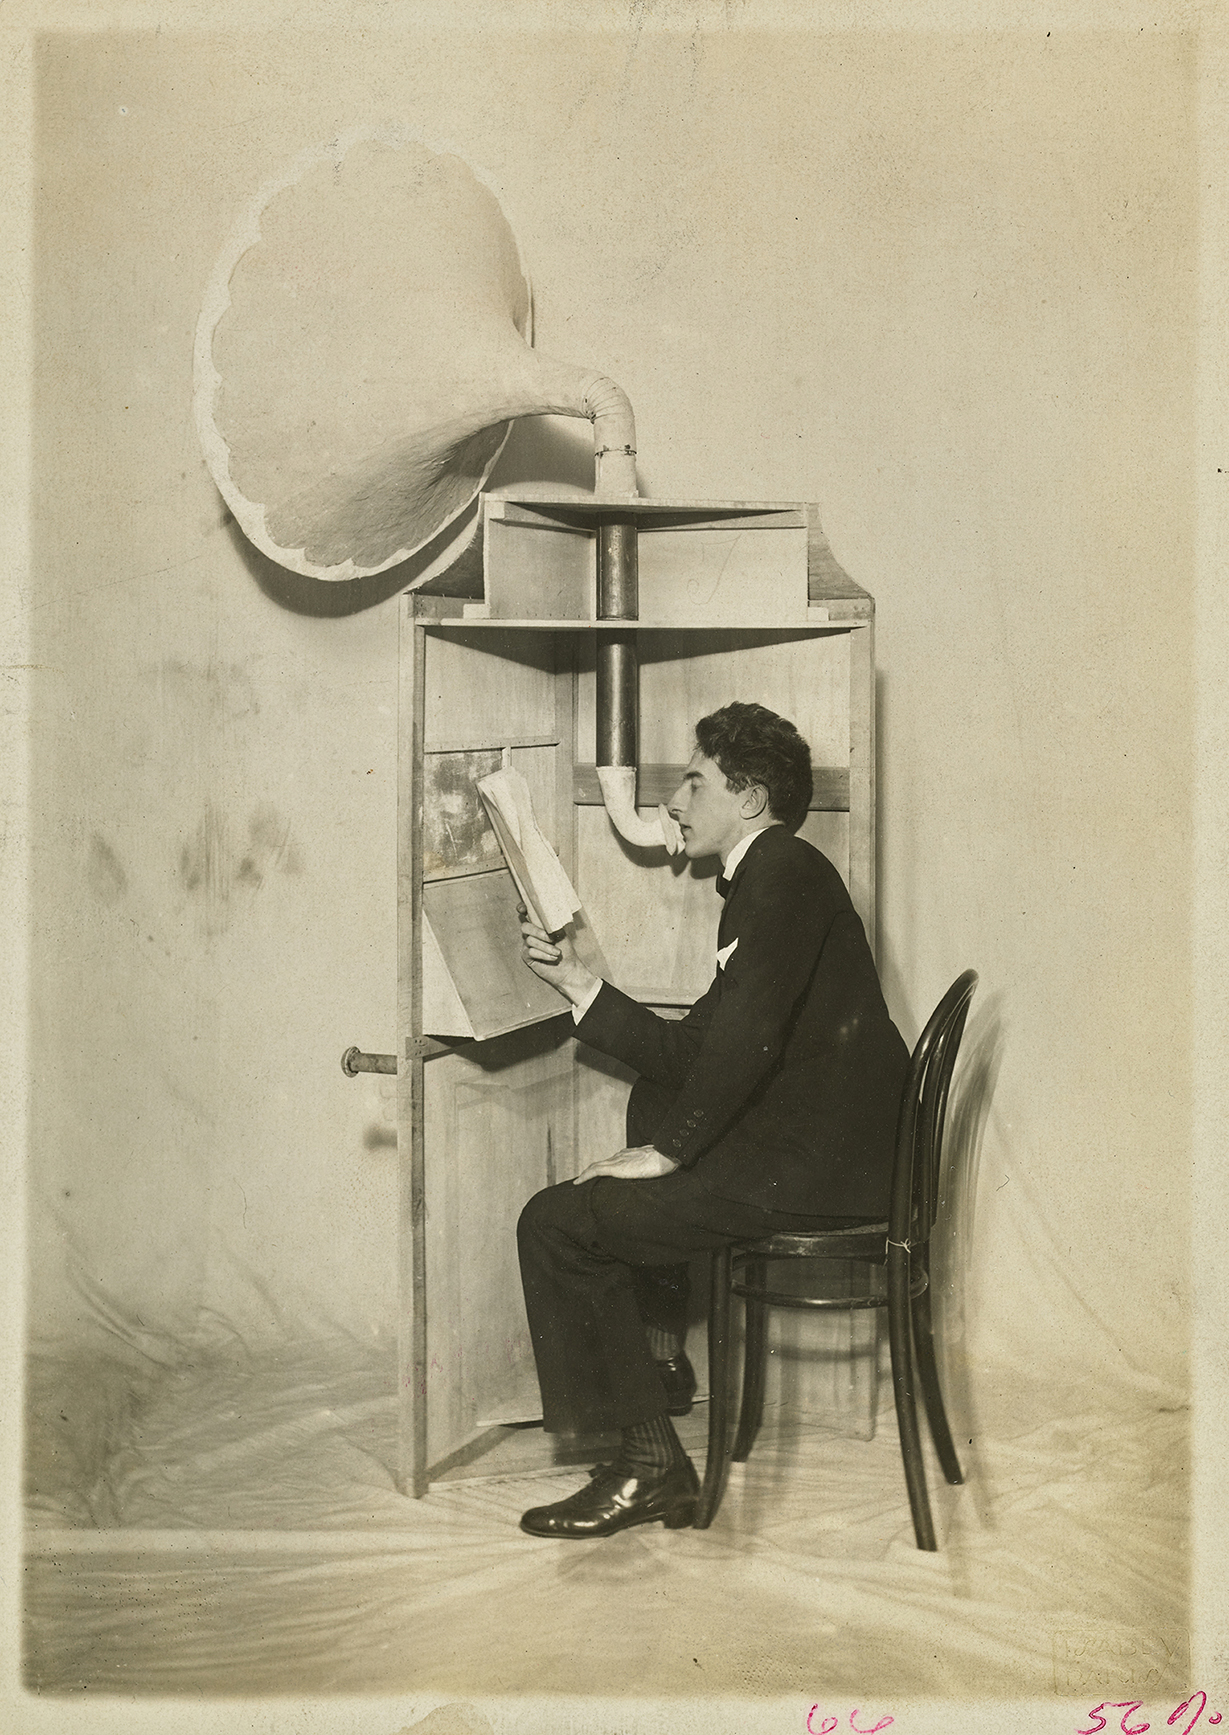 Ο συγγραφέας Ζαν Κοκτό μιλάει σε φωνογράφο, σε σκηνή του έργου του «Ο Γαμπρός και η Νύφη του Πύργου του Αιφελ», το 1921